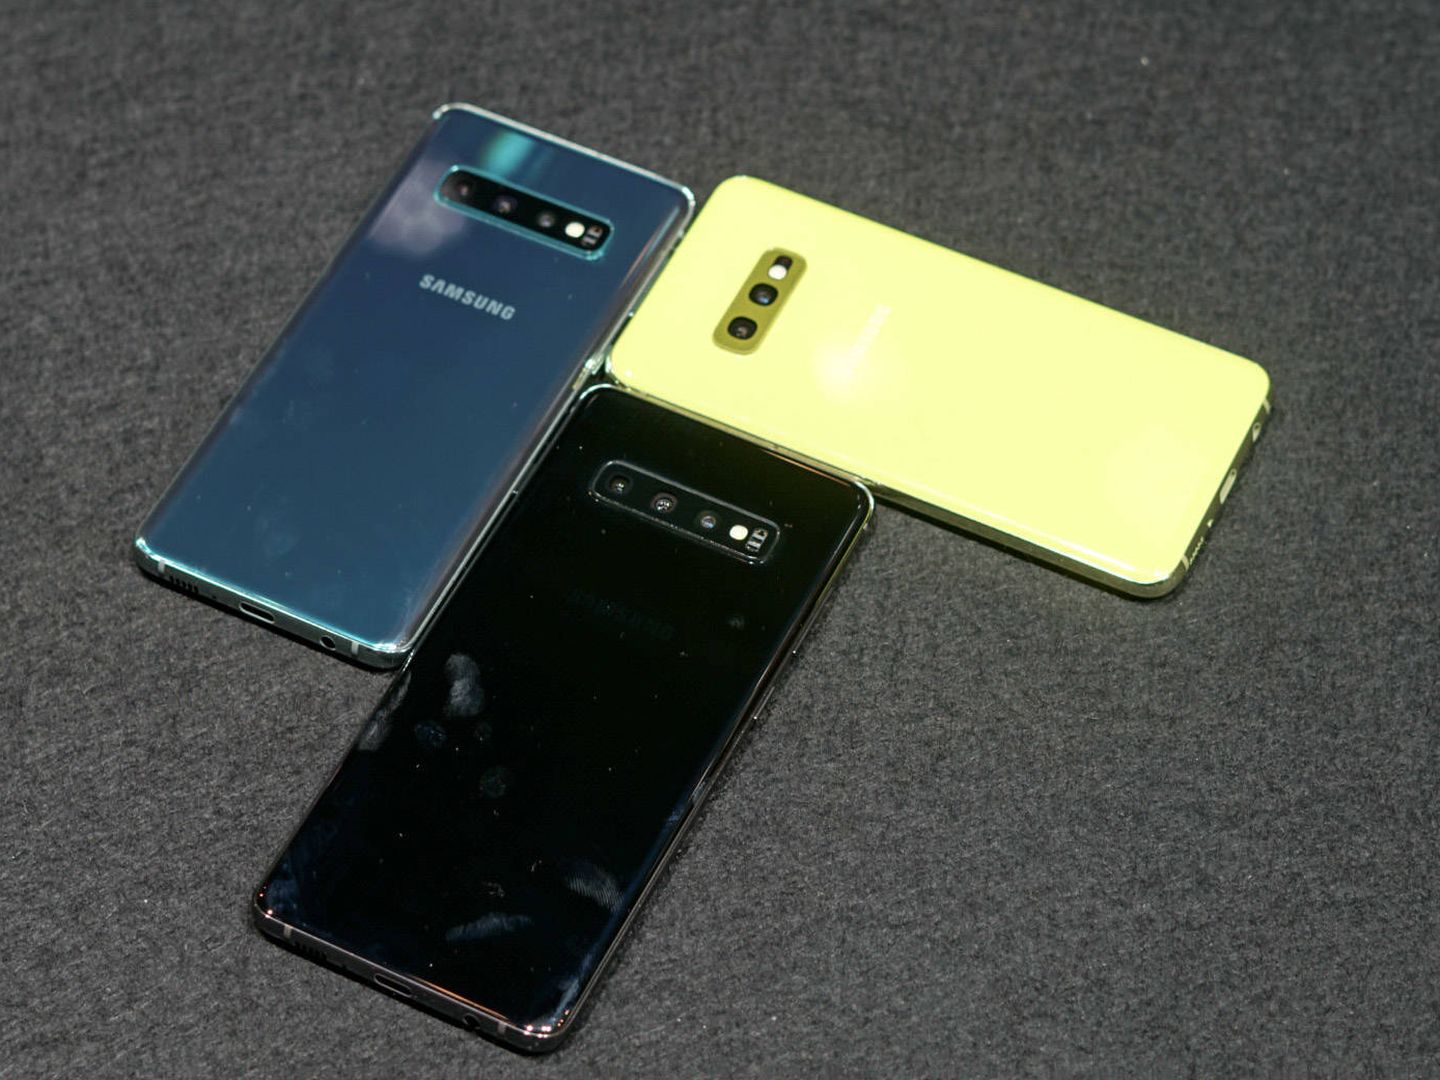 Samsung Galaxy S10, S10 Plus y S10 e. (M. Mcloughlin)